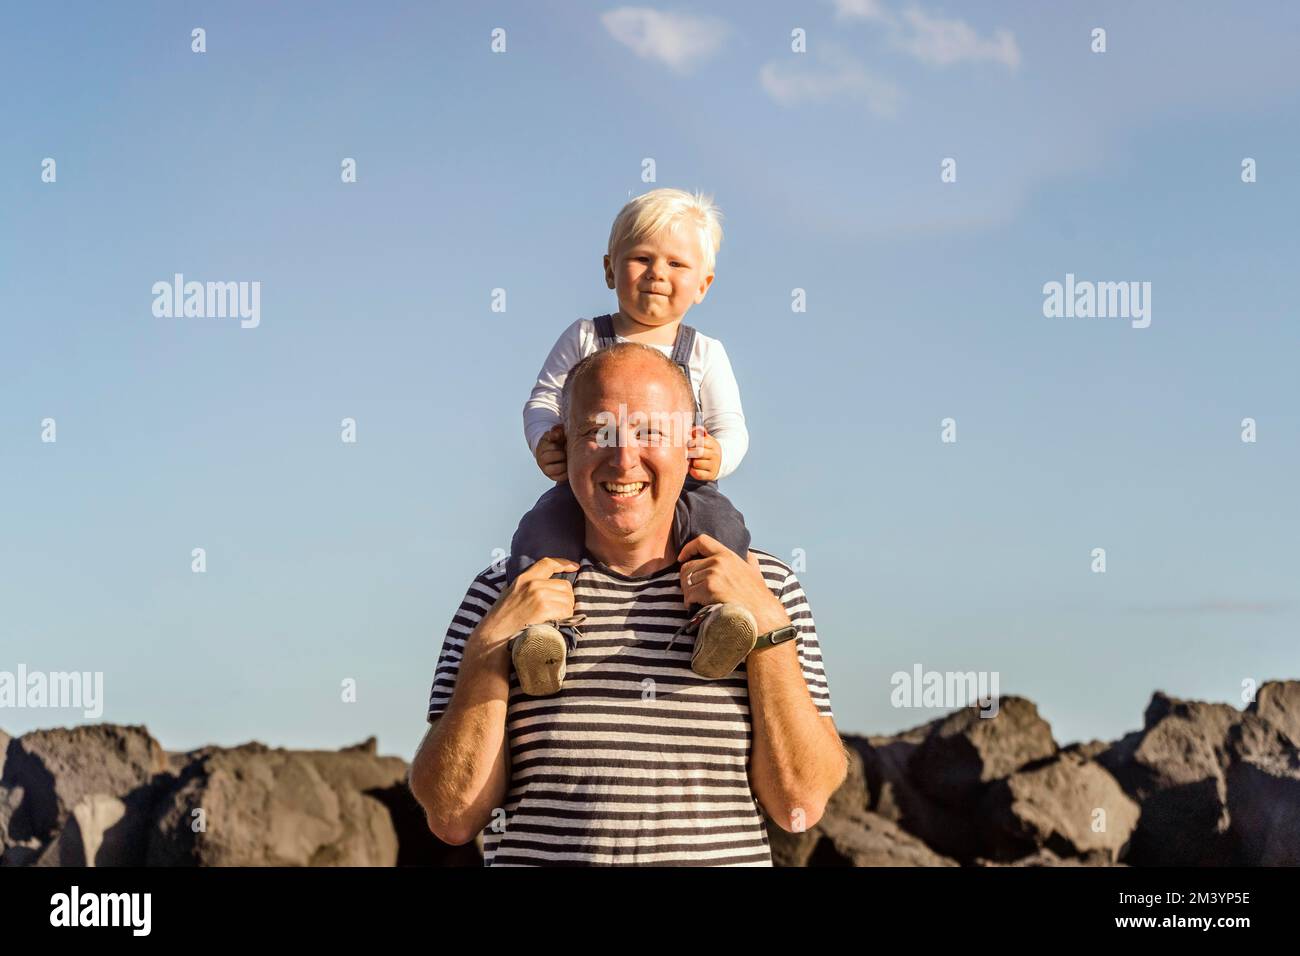 Glücklicher Vater, der seinen kleinen blonden Sohn auf der Schulter gegen den blauen Himmel hält Stockfoto